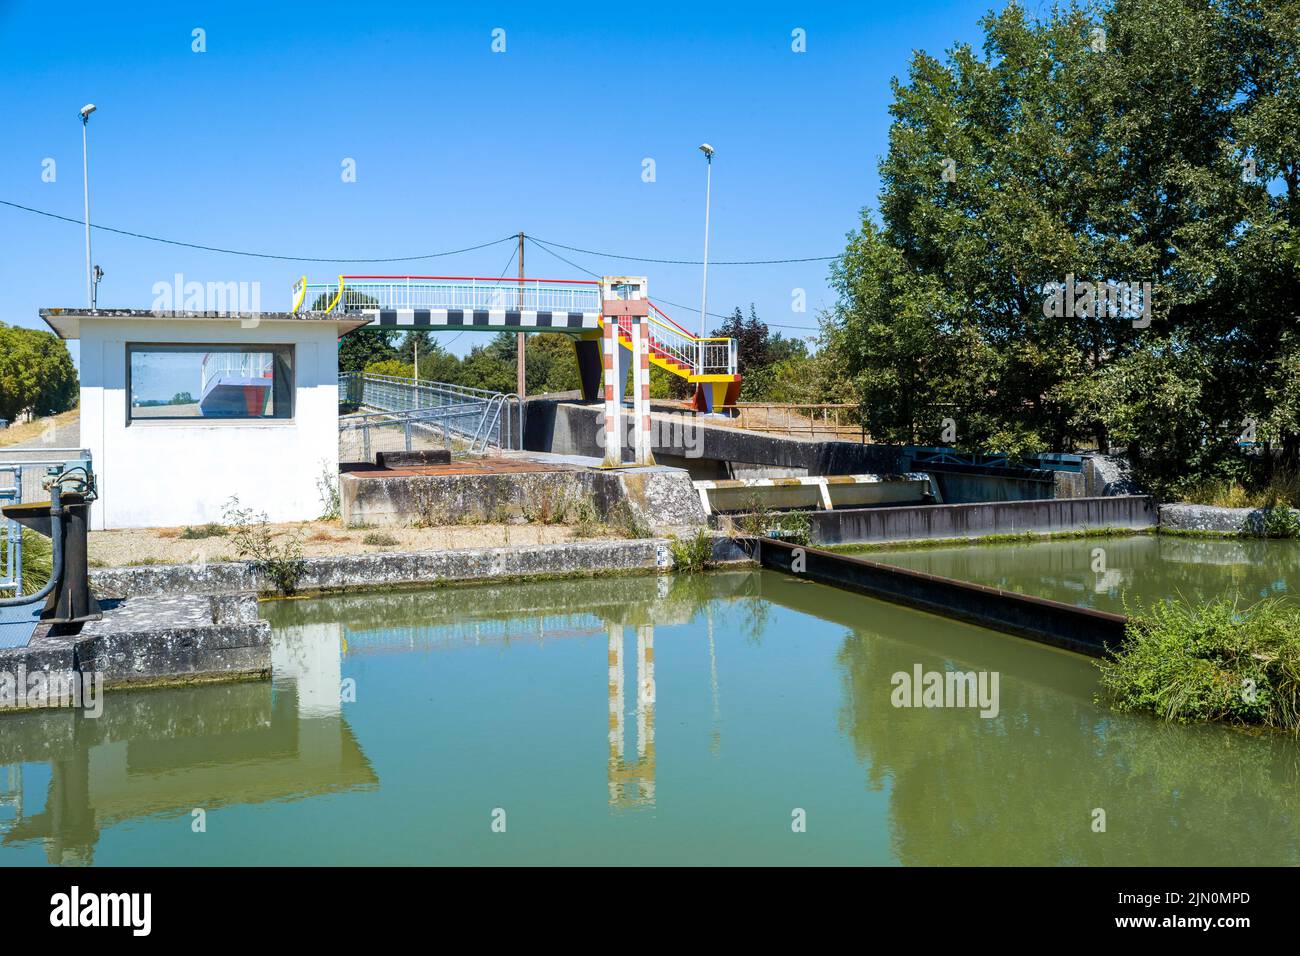 Schlendern Sie am Wasserhang von Montech entlang, wo das Erbe des Flusstourismus und seine Industrieschätze auf dem Canal des Deux Mers, der sich in der ehemaligen Papierfabrik befindet, aufbewahrt werden, und machen Sie einen unerwarteten Spaziergang von 2,7 km entlang des Kanals, der zur Garonne führt. Frankreich, Montech le 7 Aout 2022. Foto von Patricia Huchot-Boissier/ABACAPRESS.COM Stockfoto